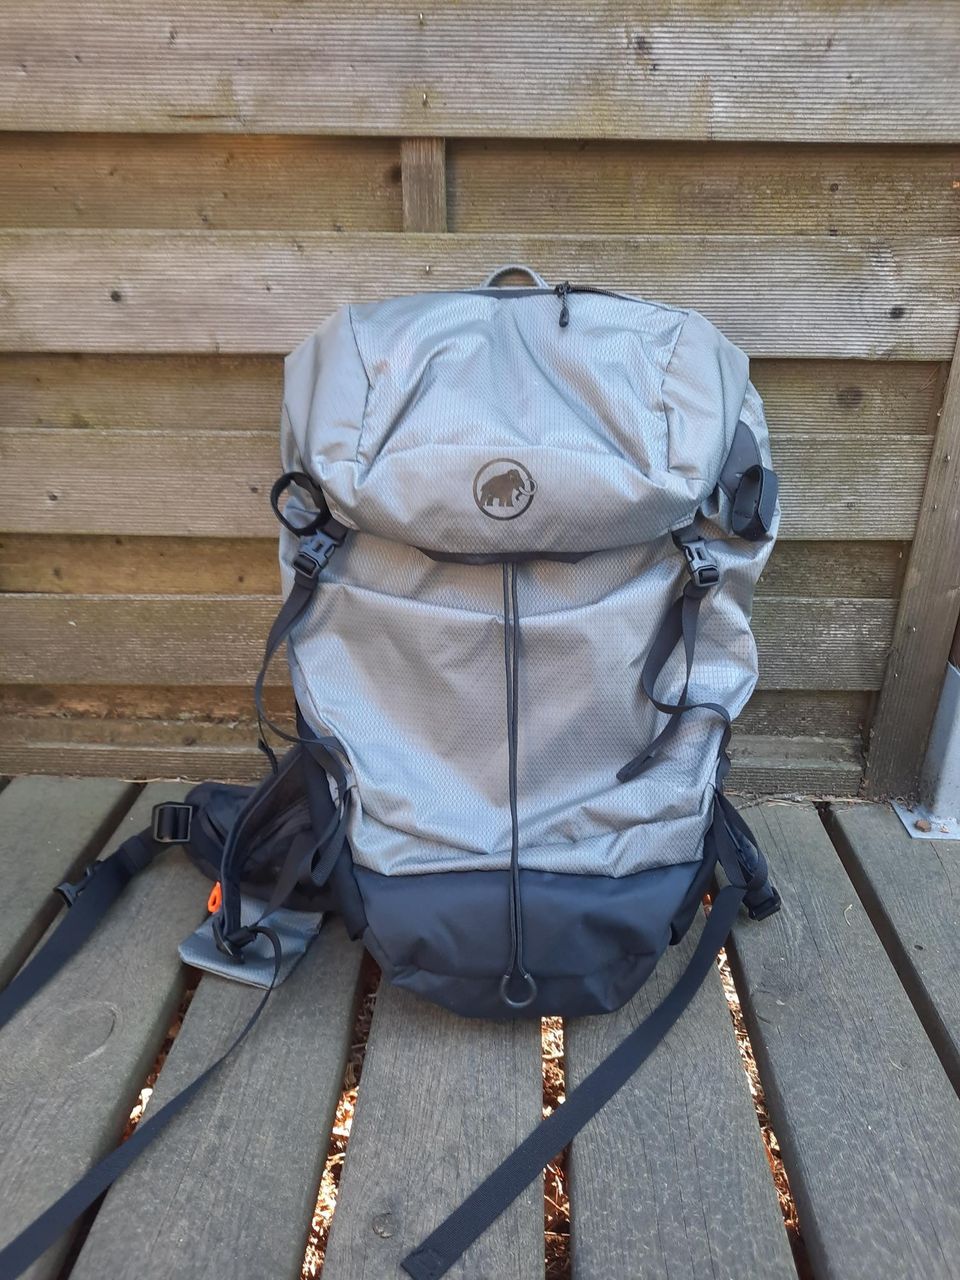 Käyttämätön 30l rinkka/new trekking backpack